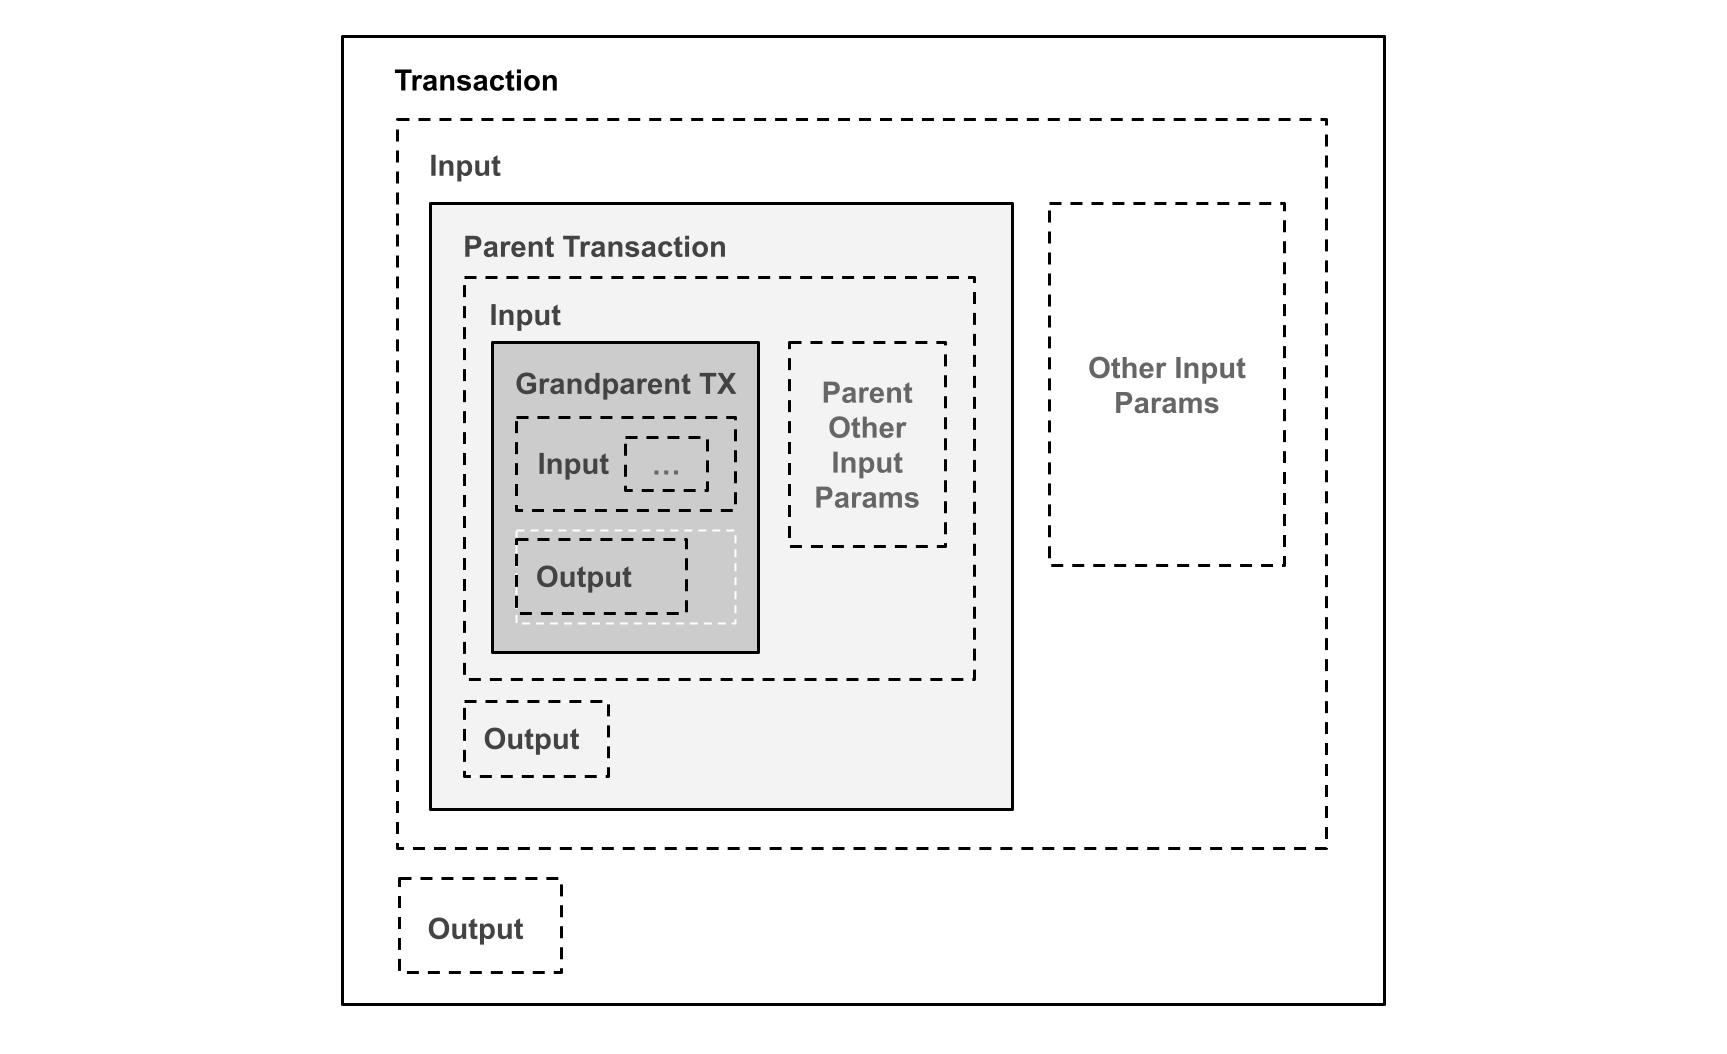 Diagrama 6. Validación de la transacción completa de los padres, prueba de inducción matemática mediante la incorporación de las transacciones completas de los padres en las entradas, lo que resulta en un aumento exponencial del tamaño de la transacción.